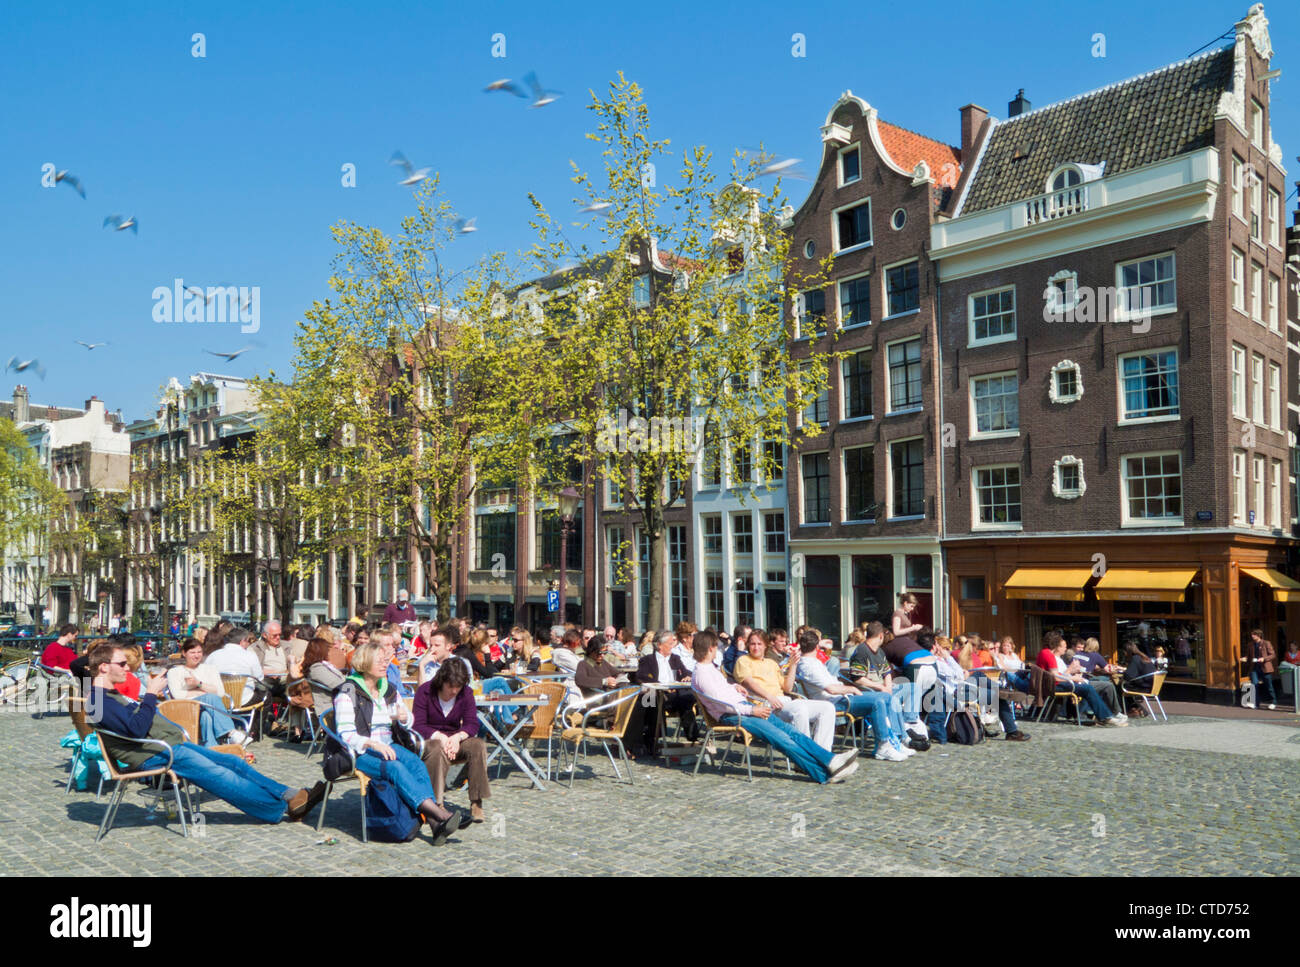 La foule en prenant un verre dans un café par le canal Singel Amsterdam Pays-Bas Hollande centrale Europe de l'UE Banque D'Images